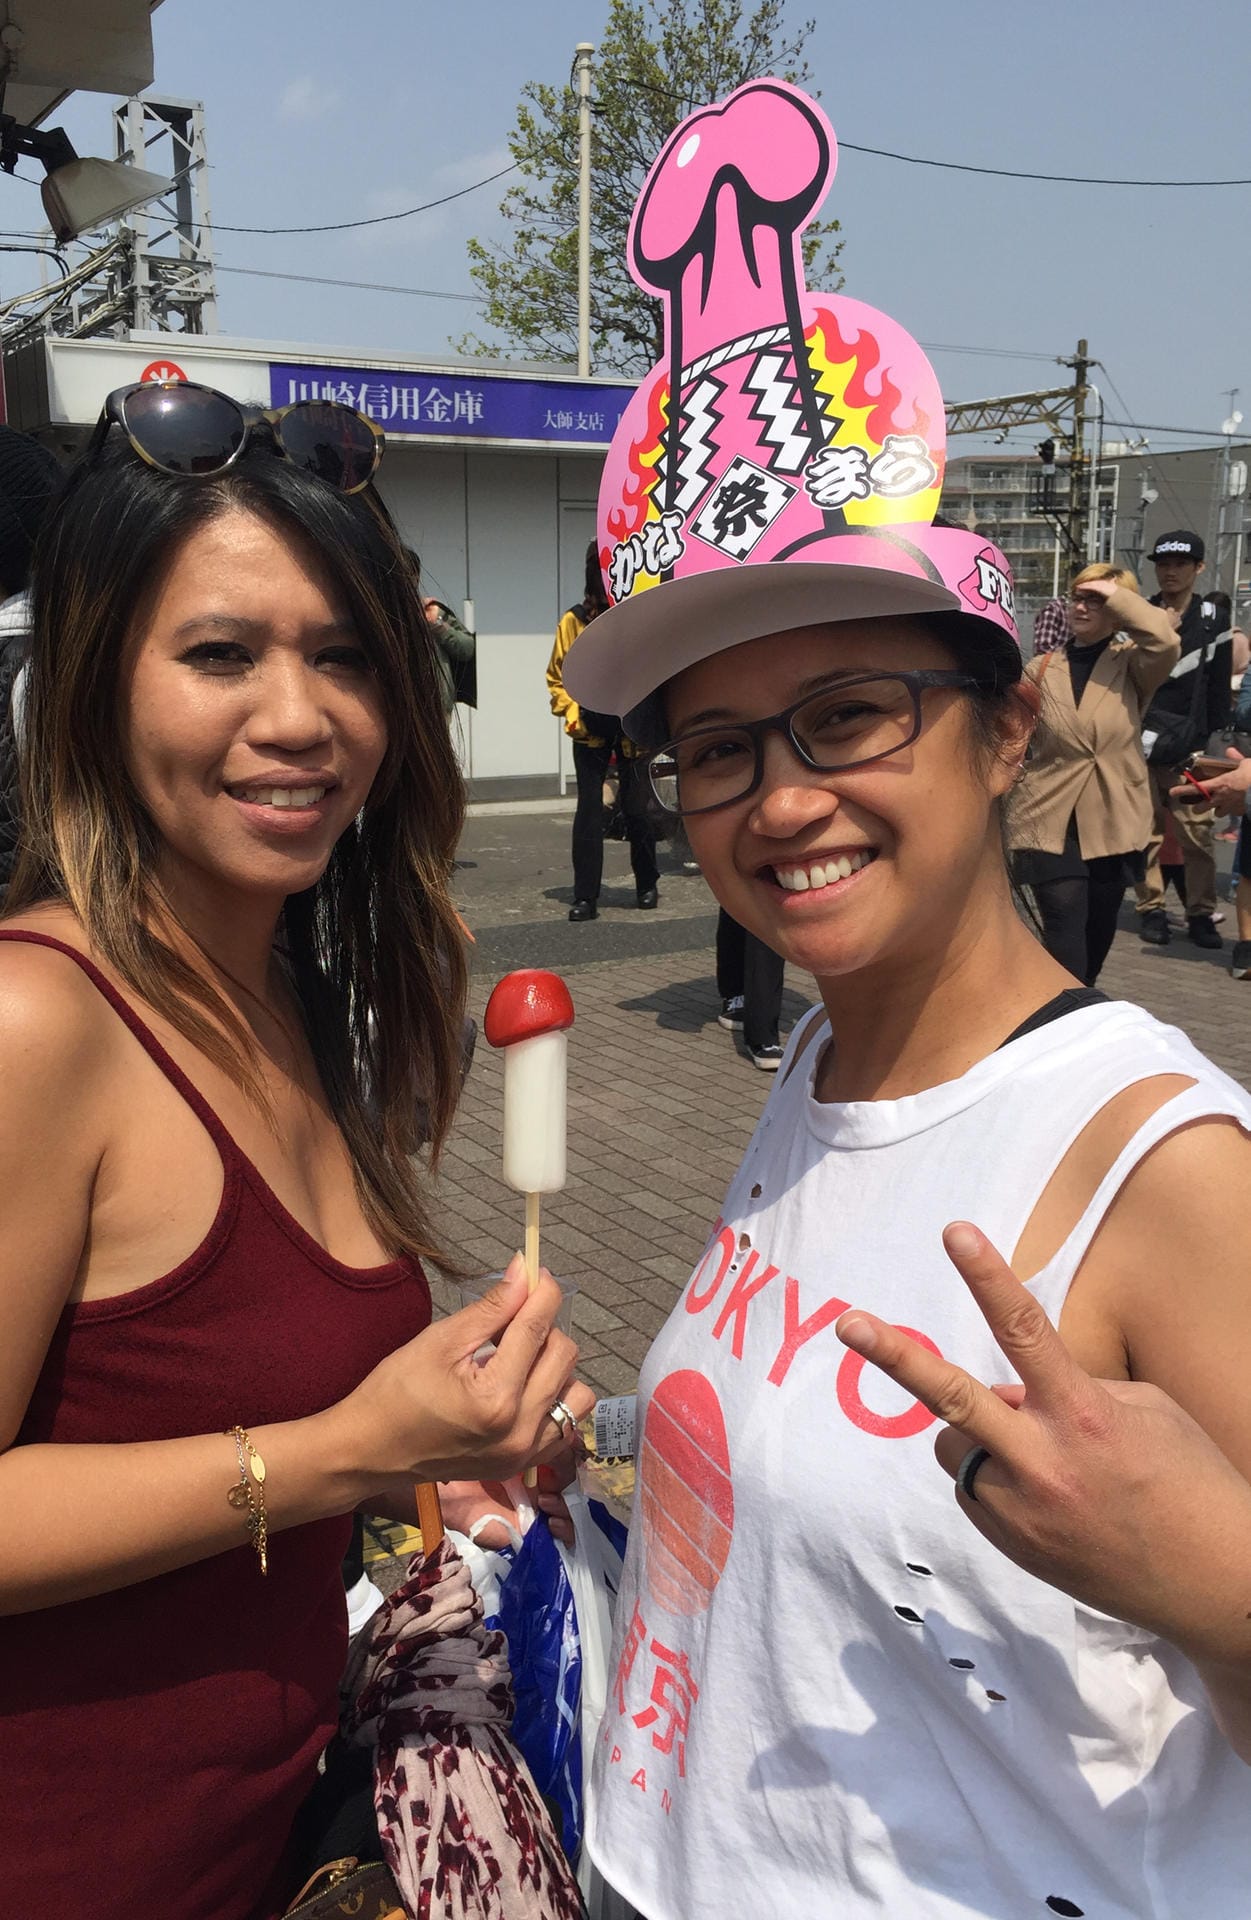 Besucher des Phallus-Festivals: Die Amerikanerinnen Jerry Tano und Jennifer Talara aus San Francisco sind extra für die japanische Kirschblüte und das Phallus-Festival nach Japan gereist.